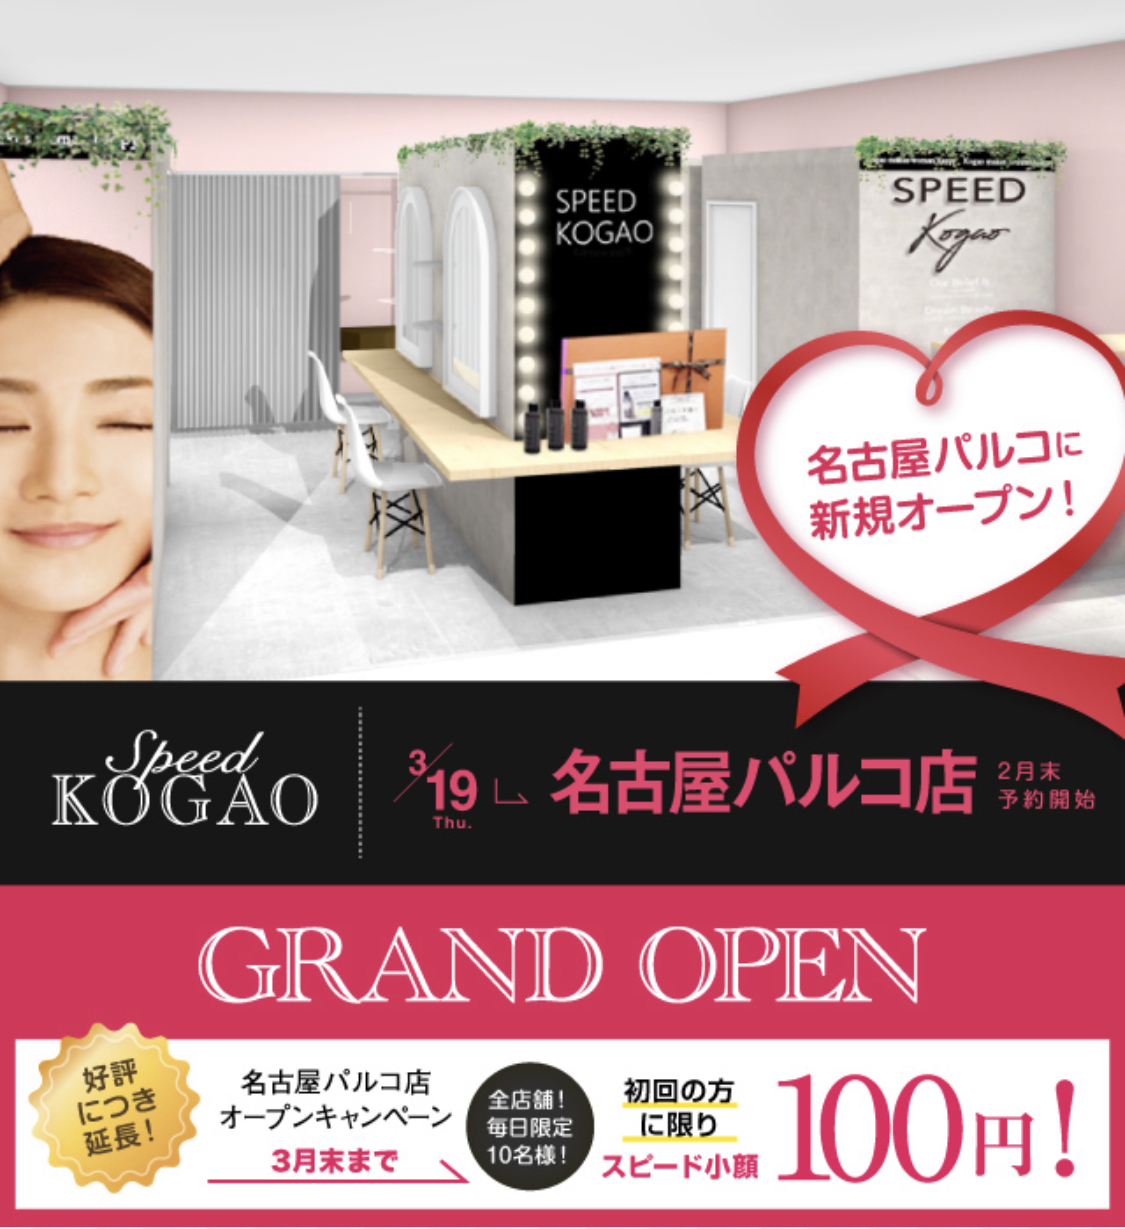 大人気小顔サロン スピード小顔 が名古屋エリアに初出店 3 19open 株式会社kogaoのプレスリリース